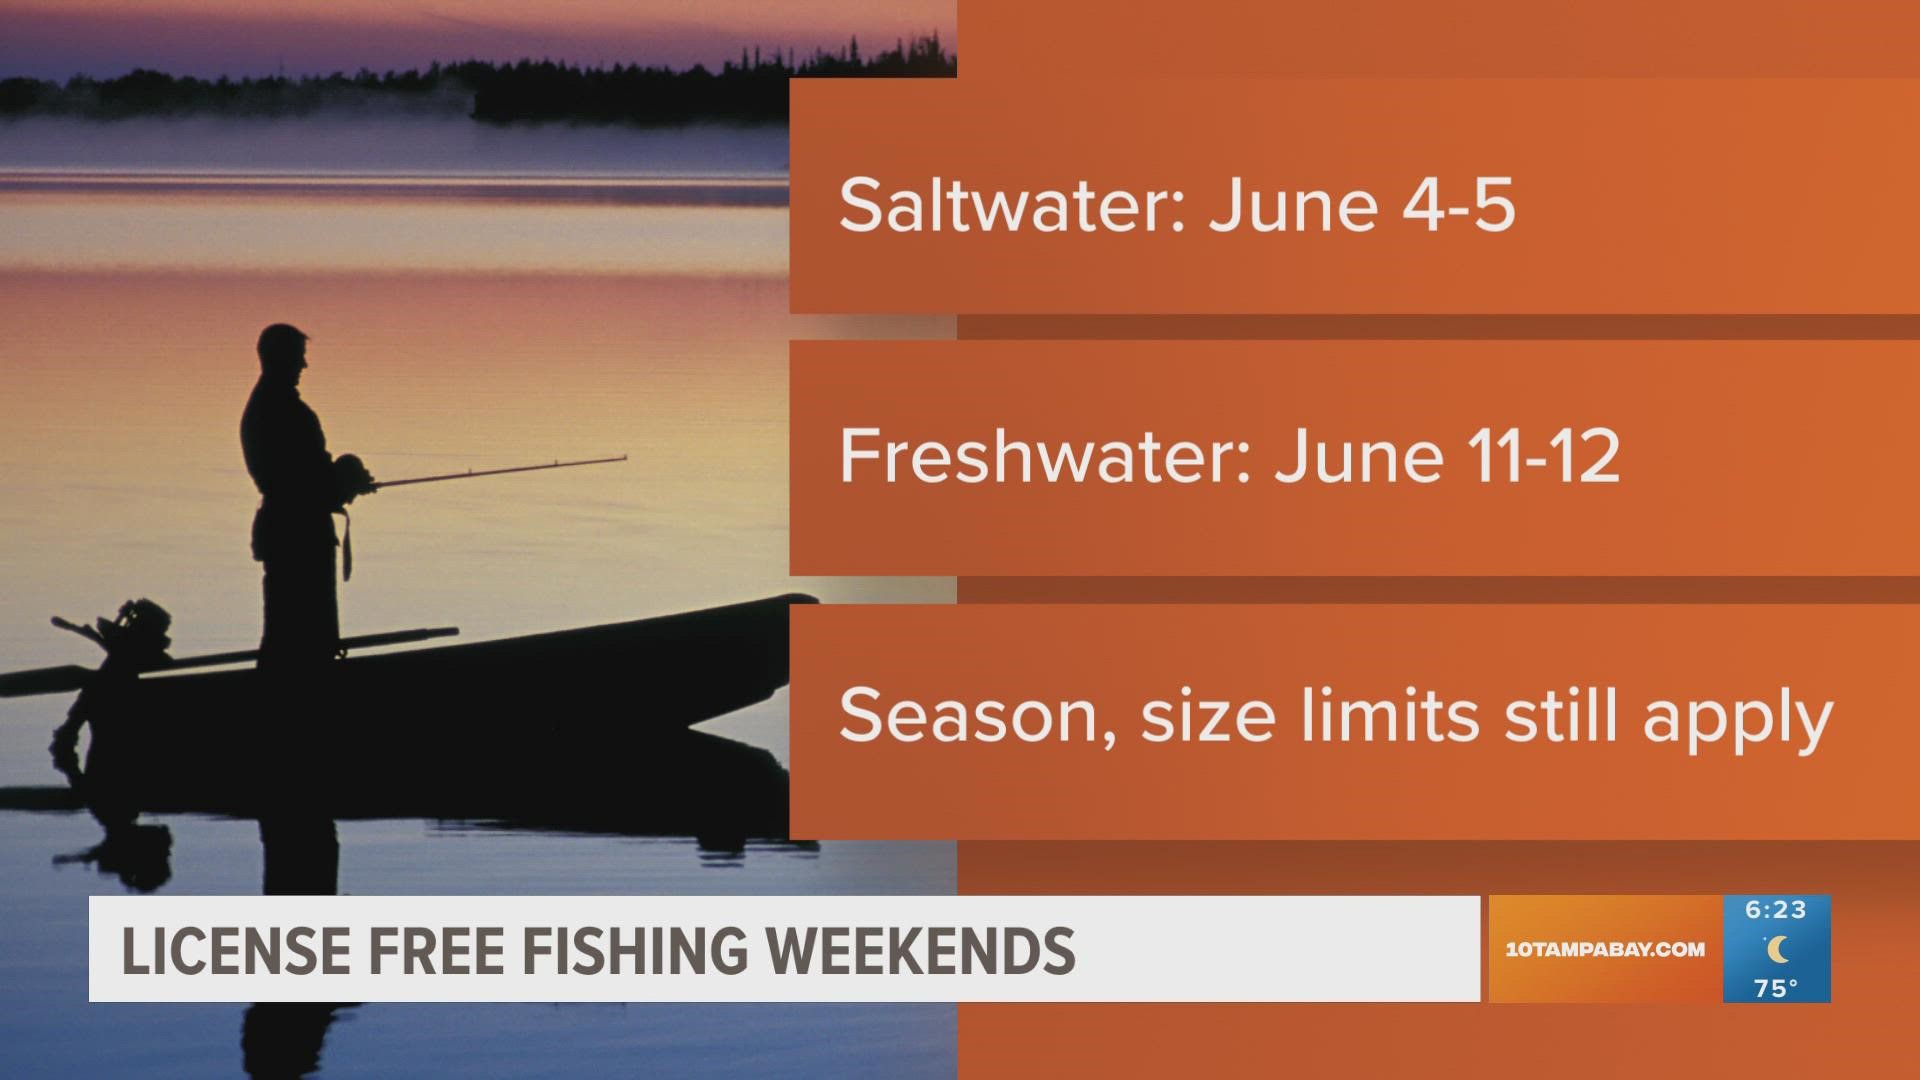 Florida license-free fishing weekends happening in June